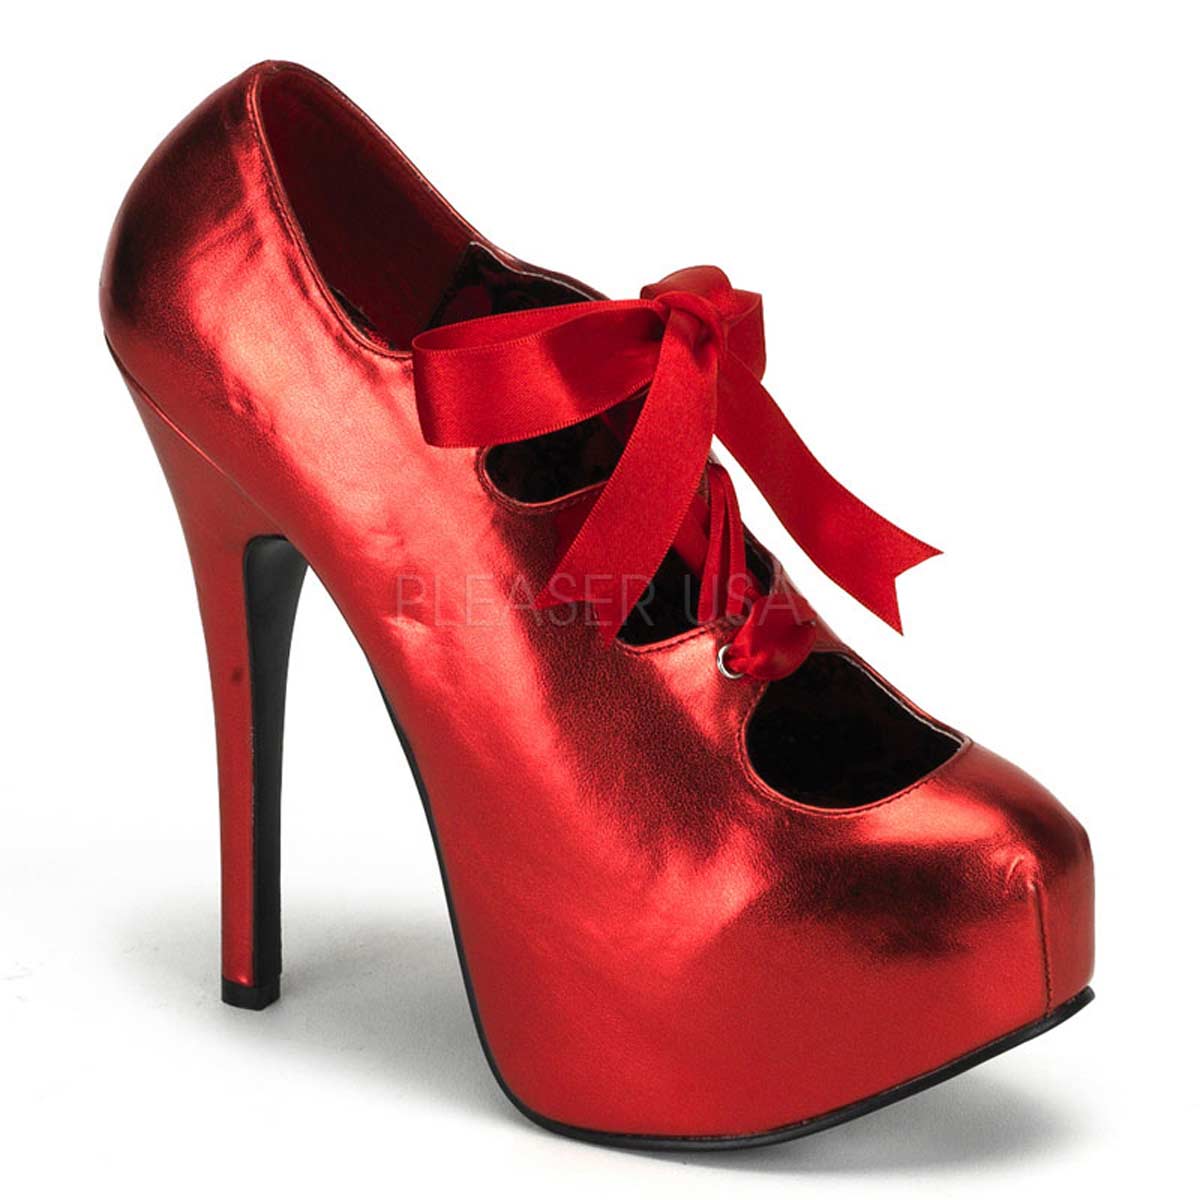 Pleaser Bordello обувь. Красные туфли. Красные туфли на каблуке. Красные ботинки. S q обувь